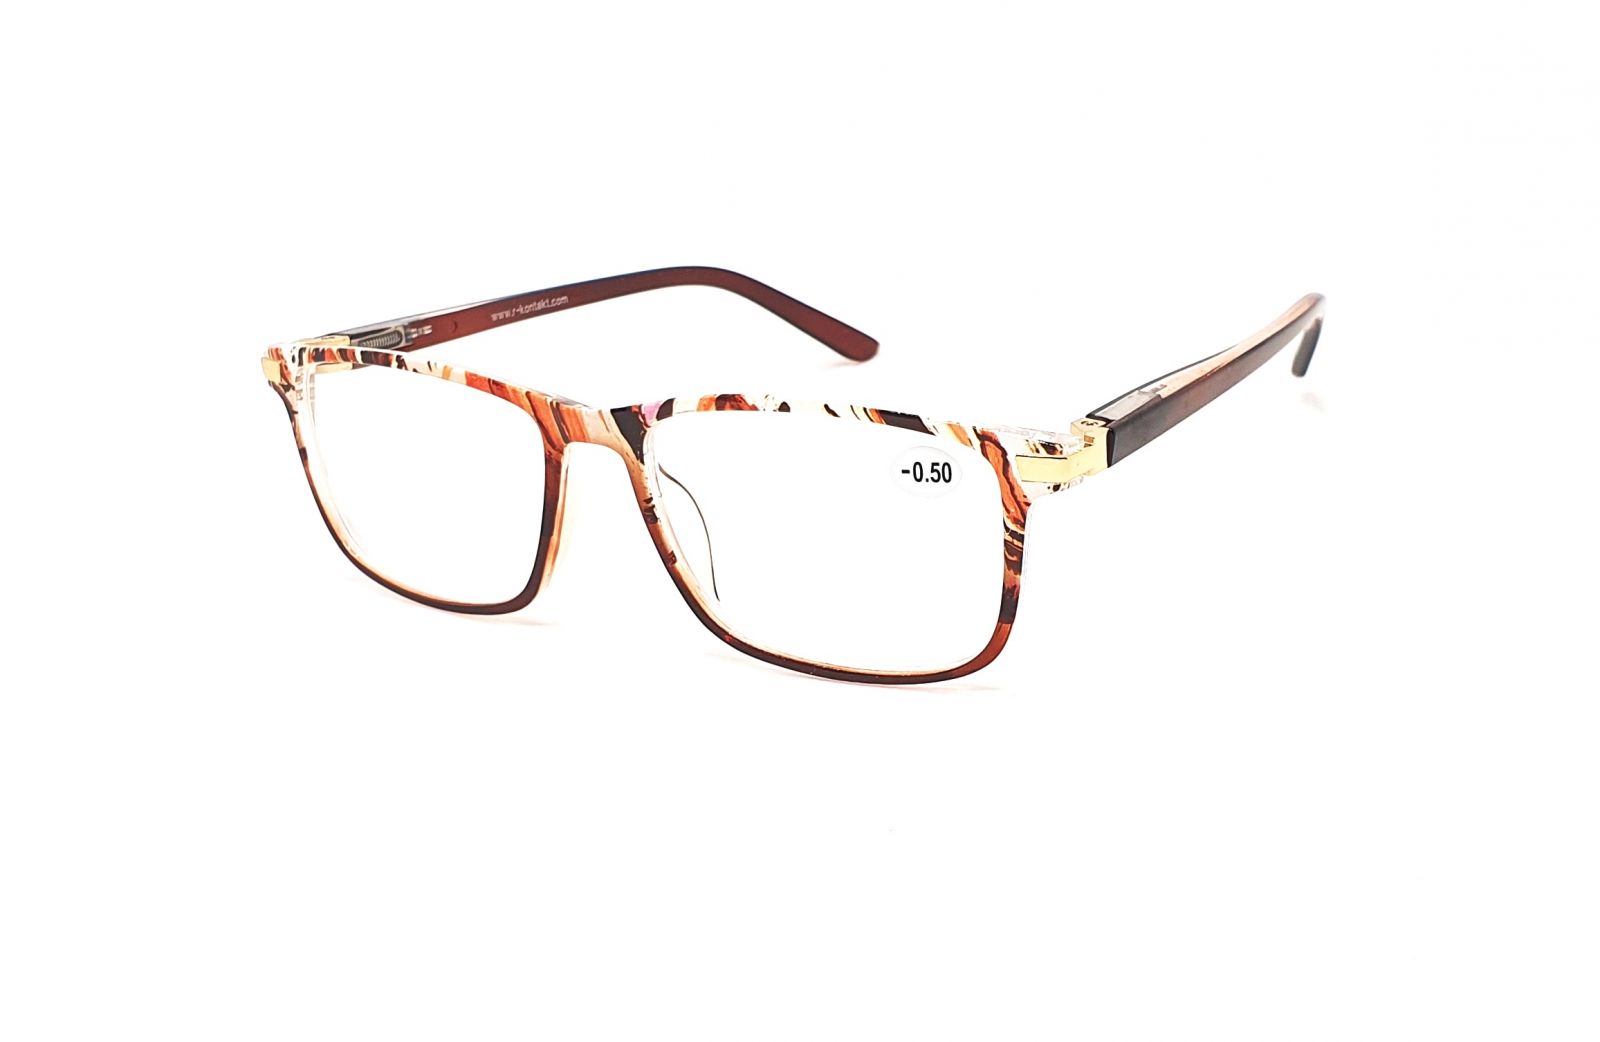 Dioptrické brýle V3075 / -1,50 brown flex